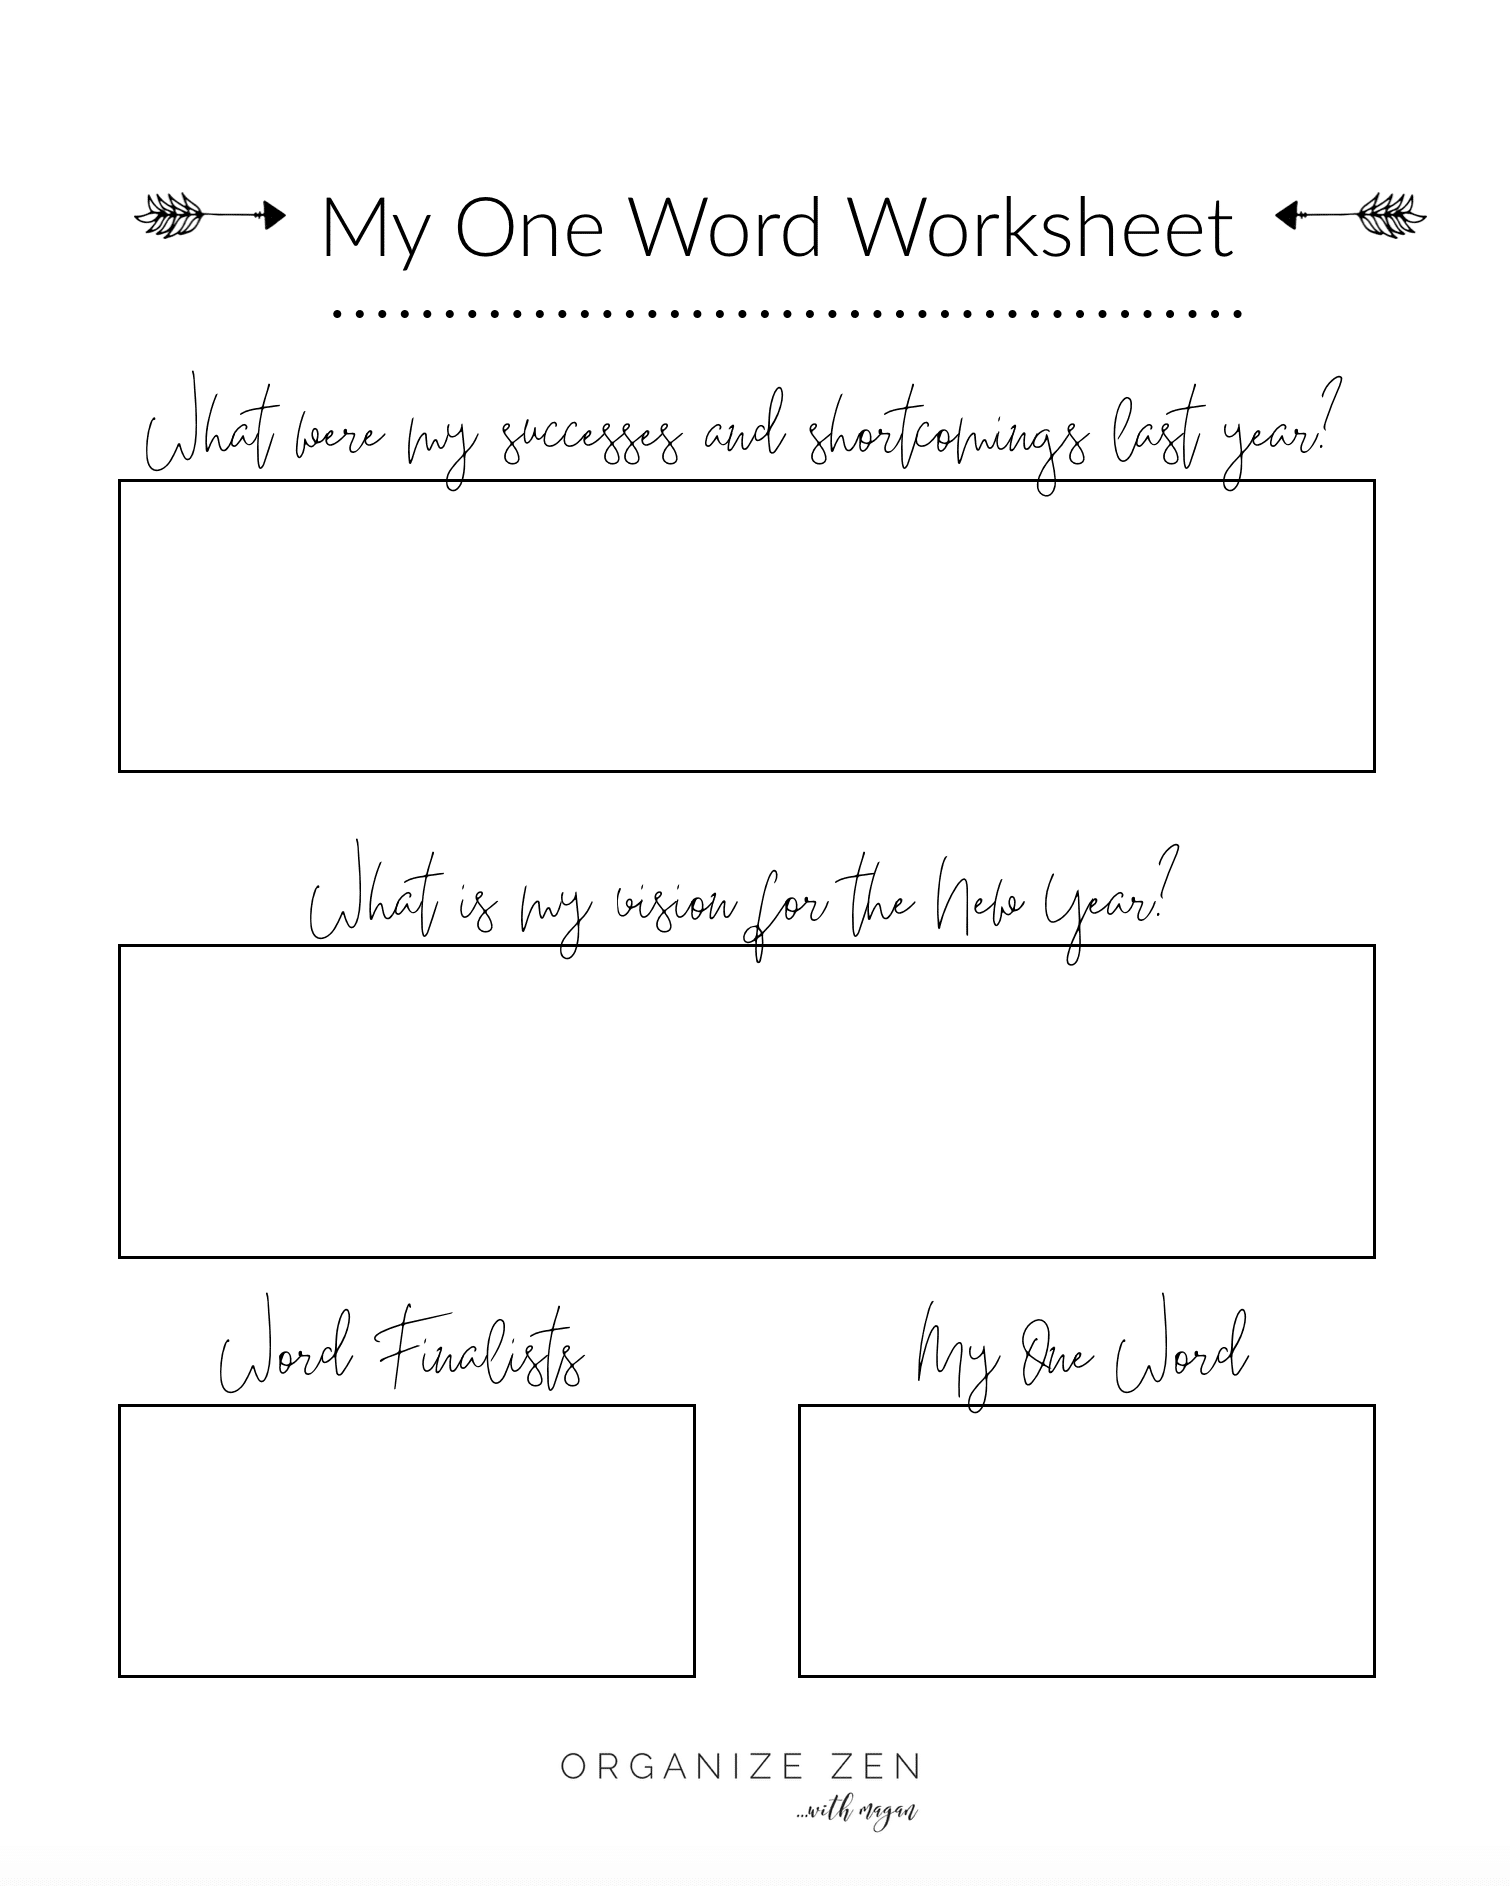 My One Word Worksheet